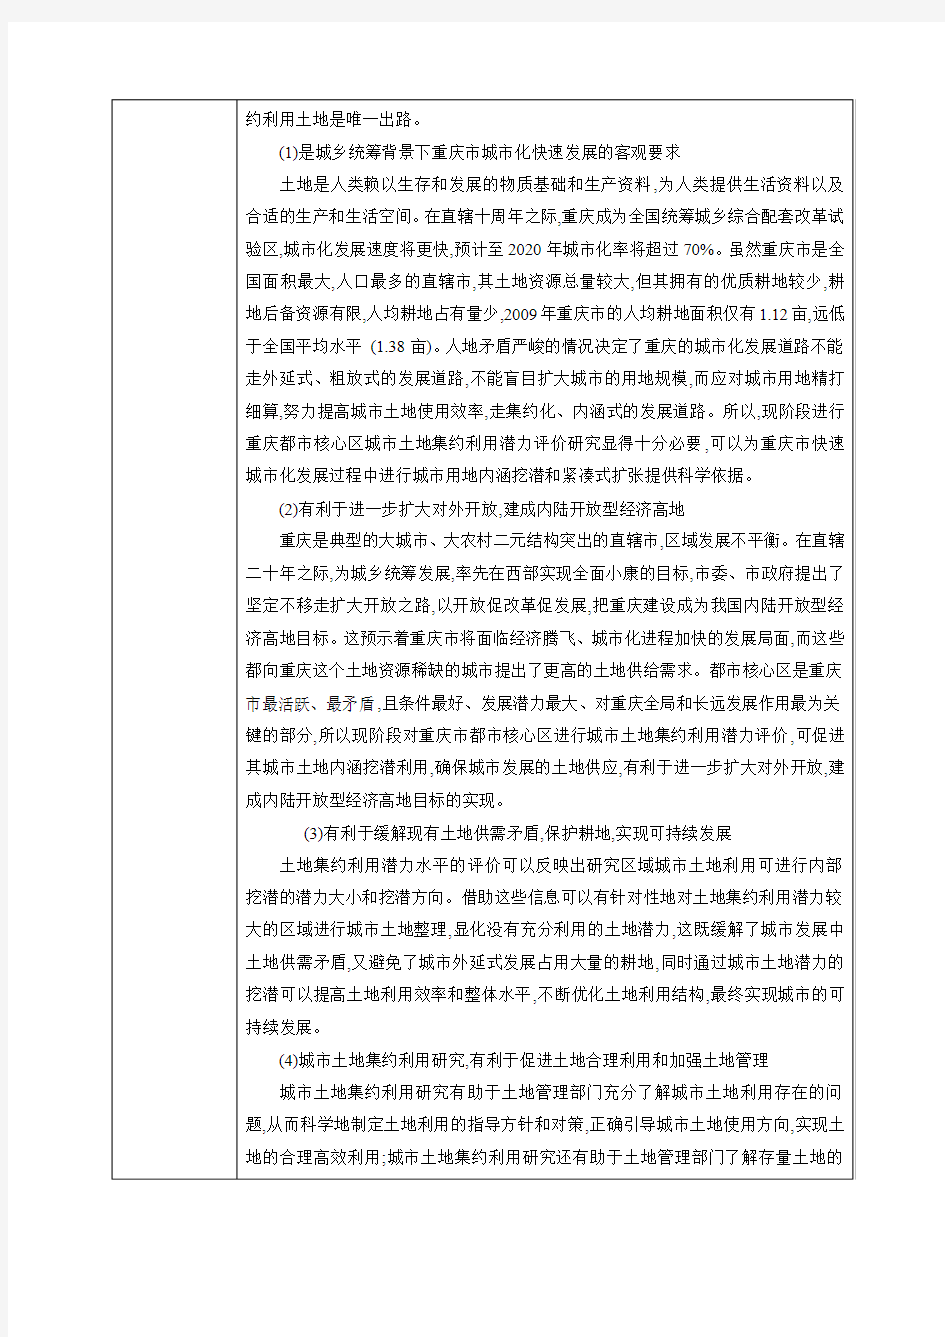 北京大学土地利用毕业设计开题报告